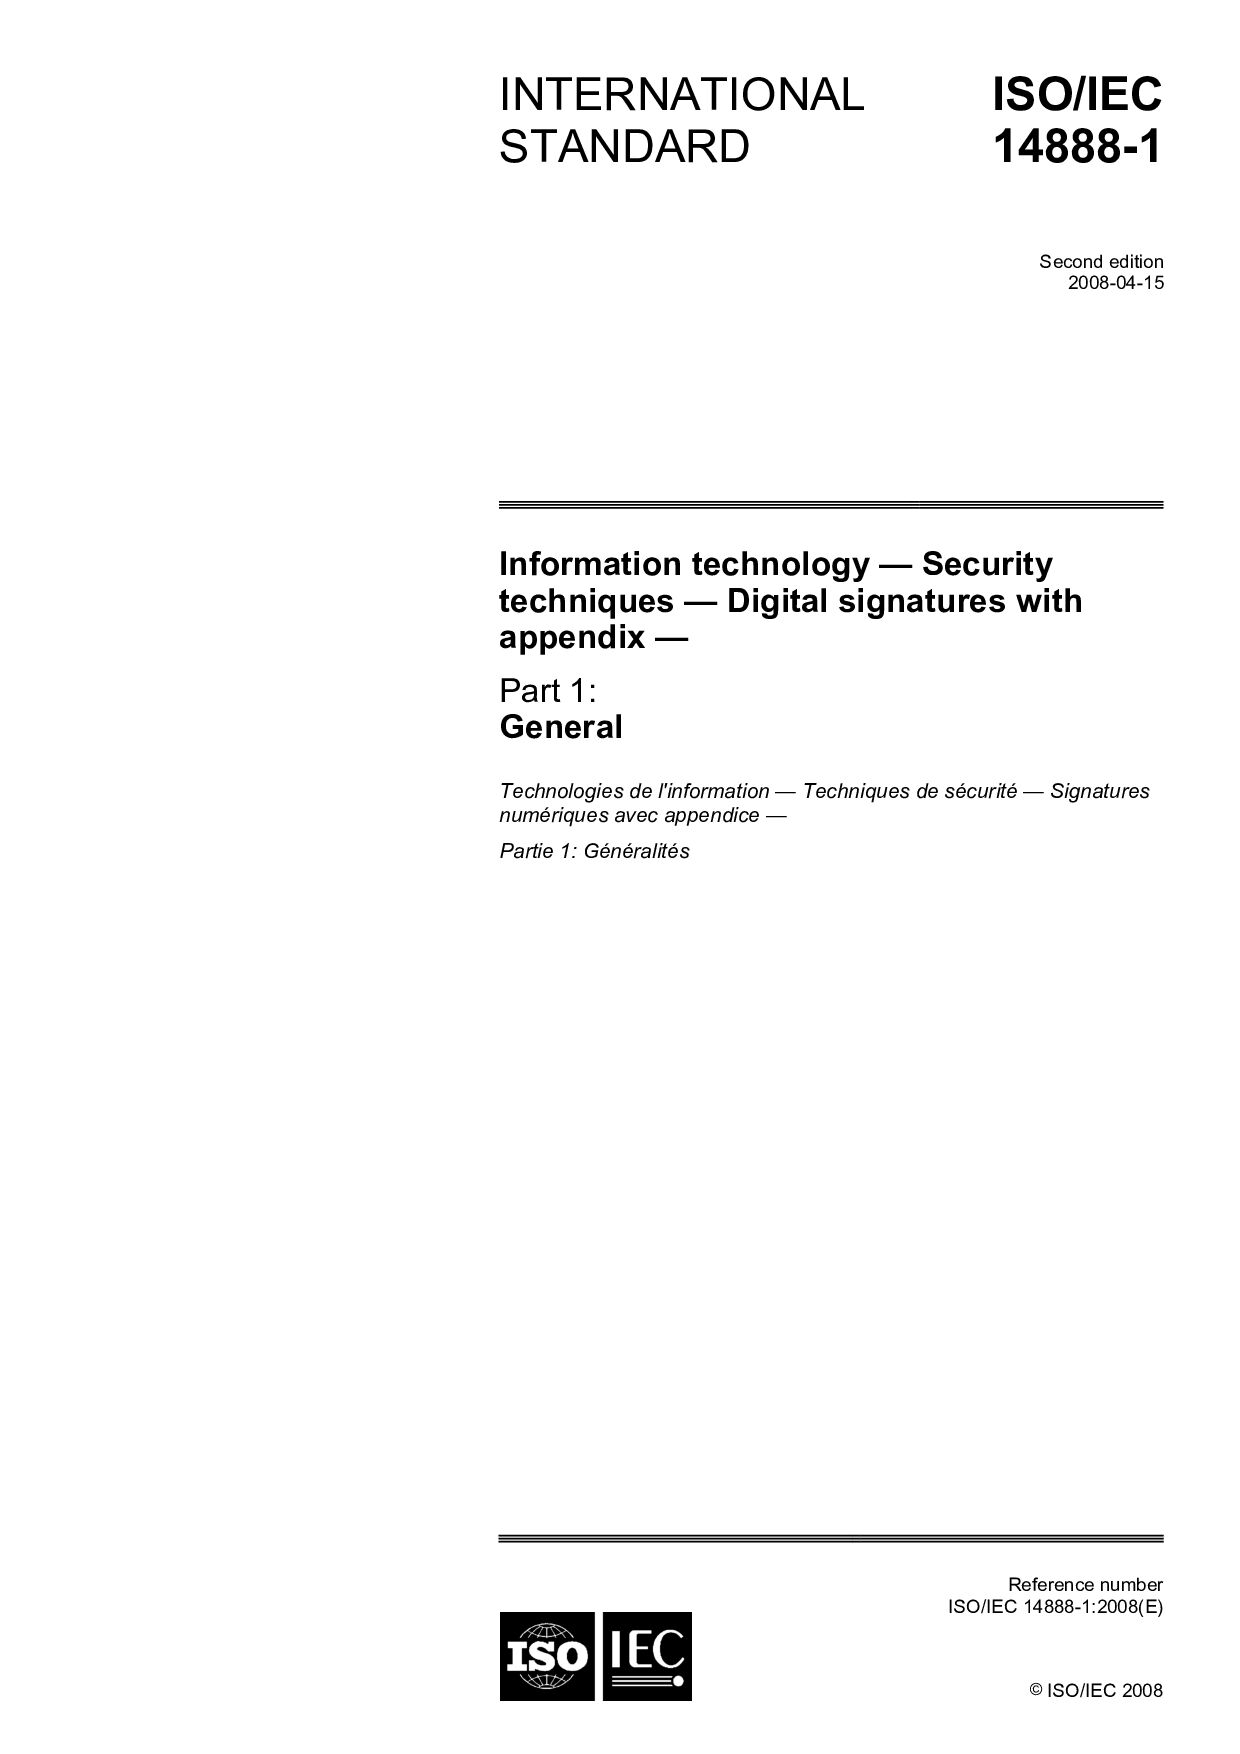 ISO/IEC 14888-1:2008封面图